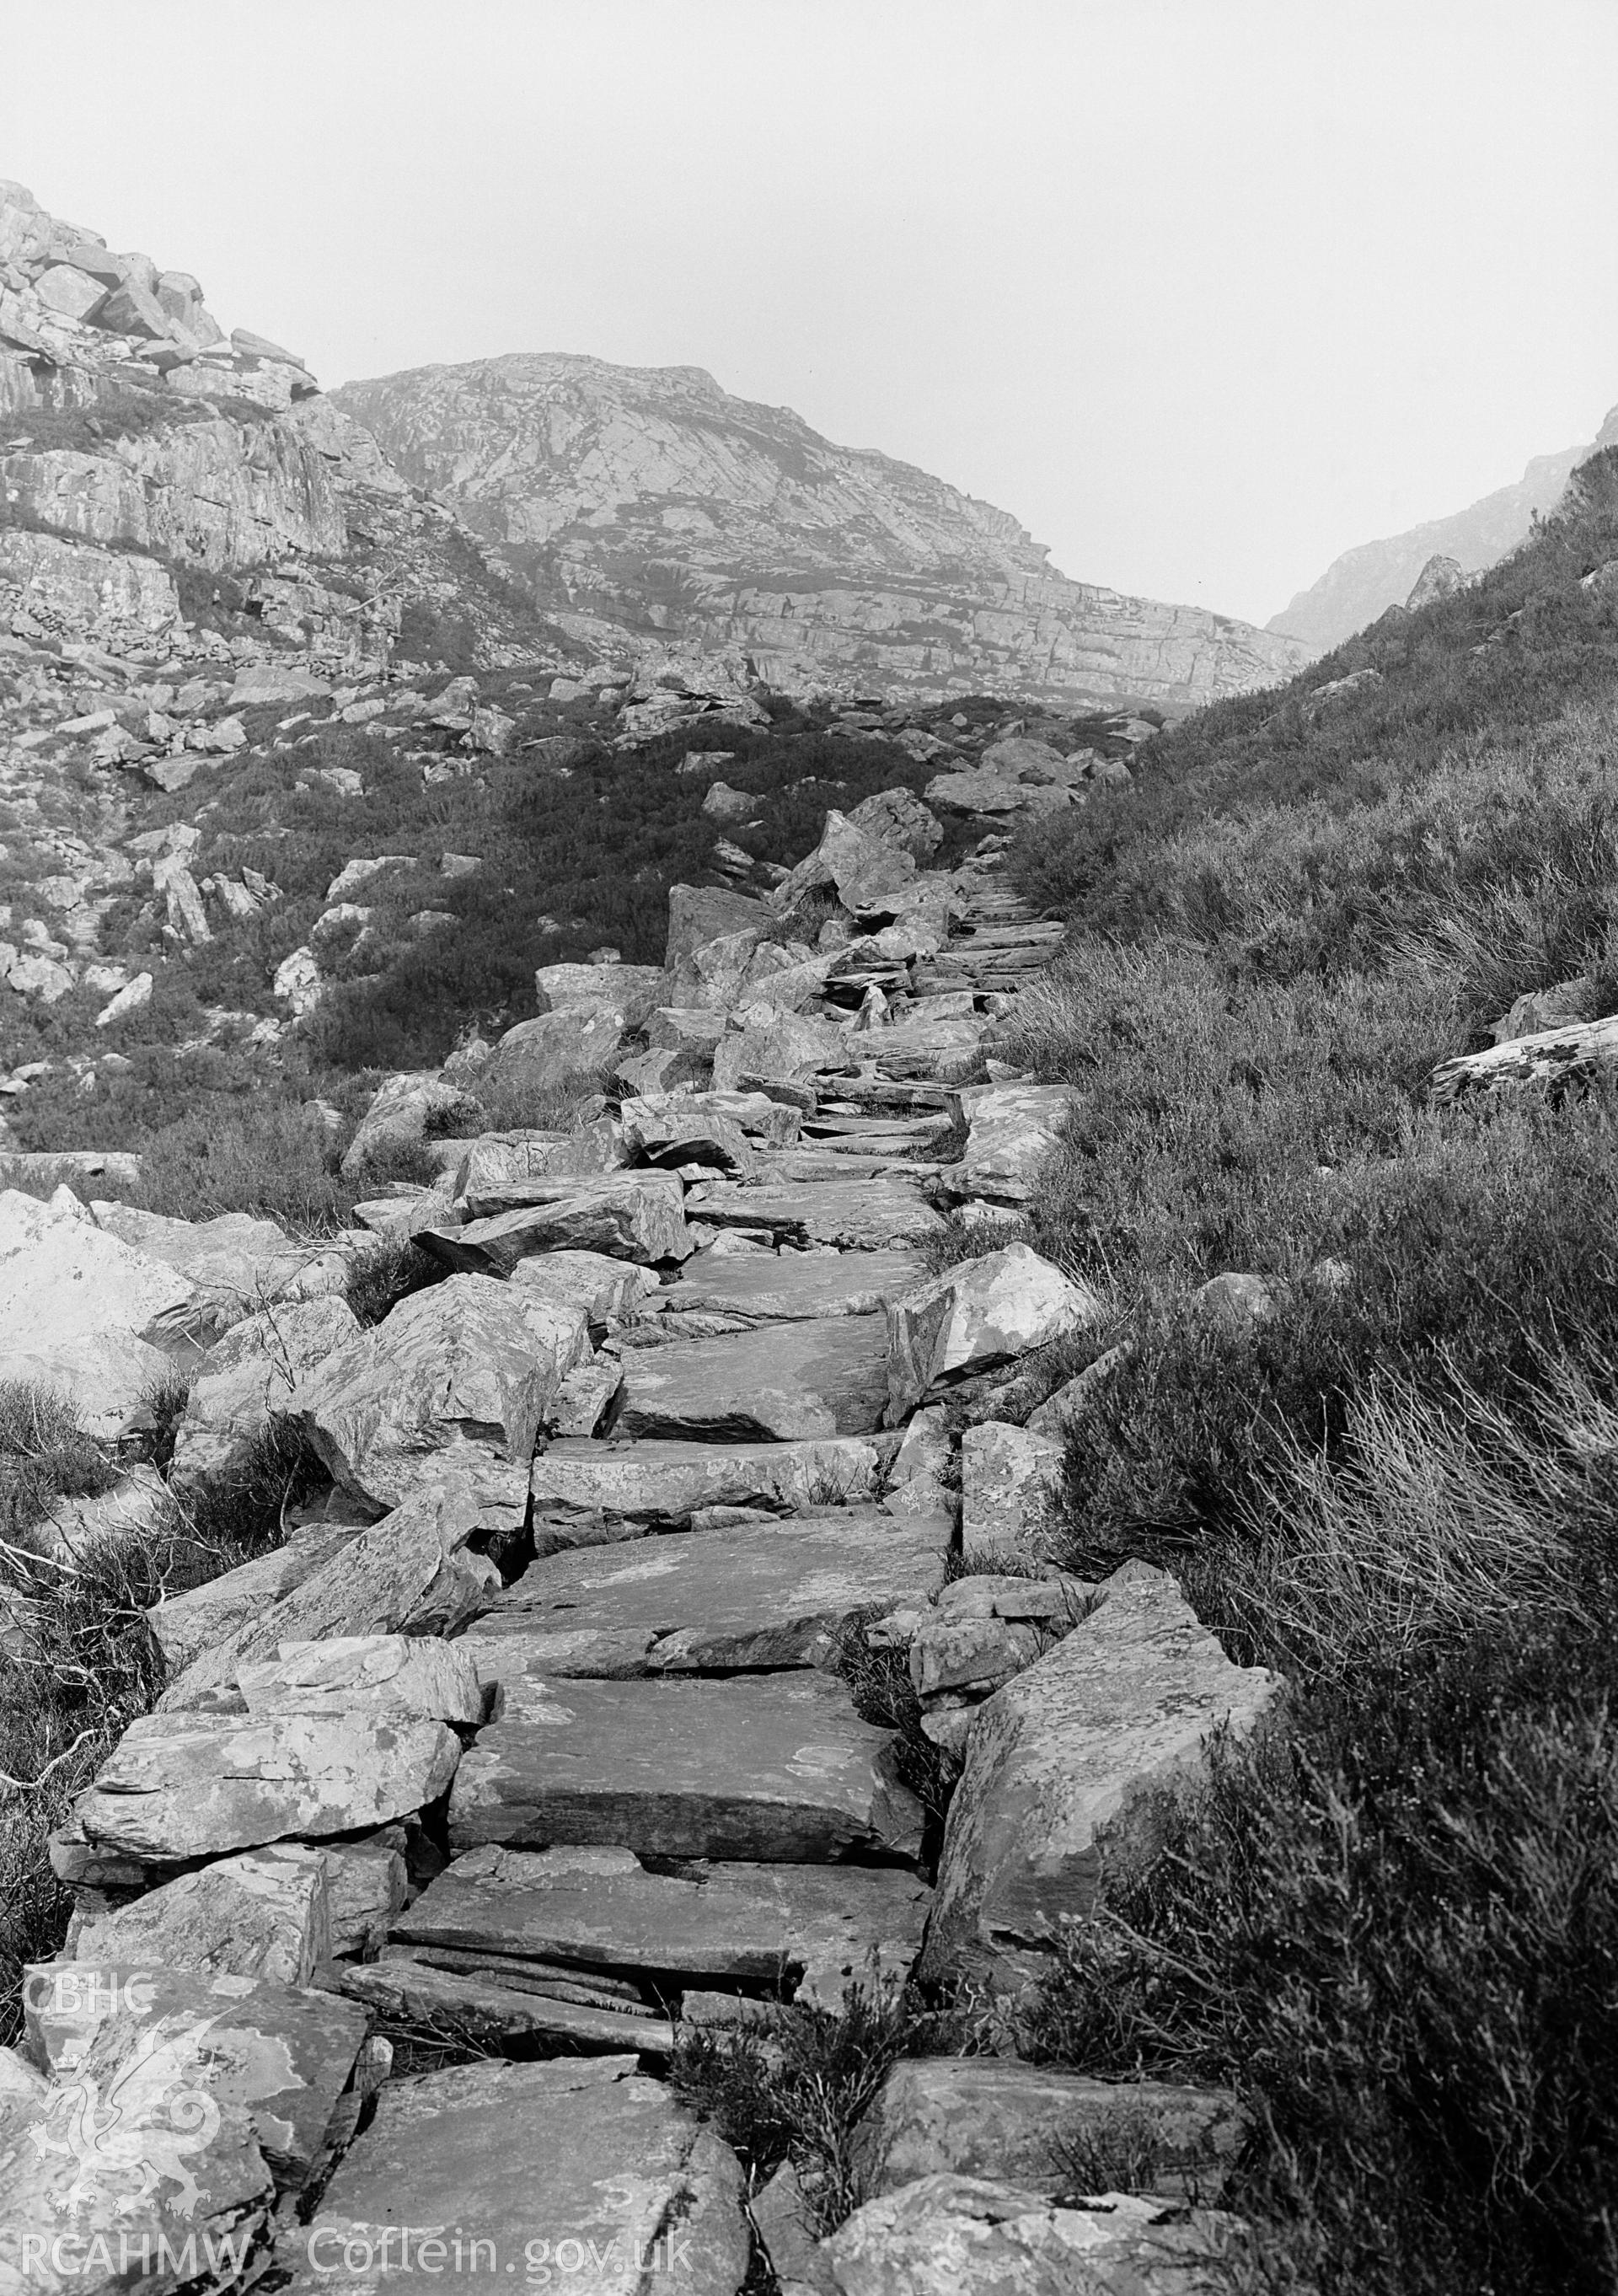 View of Roman steps at Llanbedr, taken by Clayton.